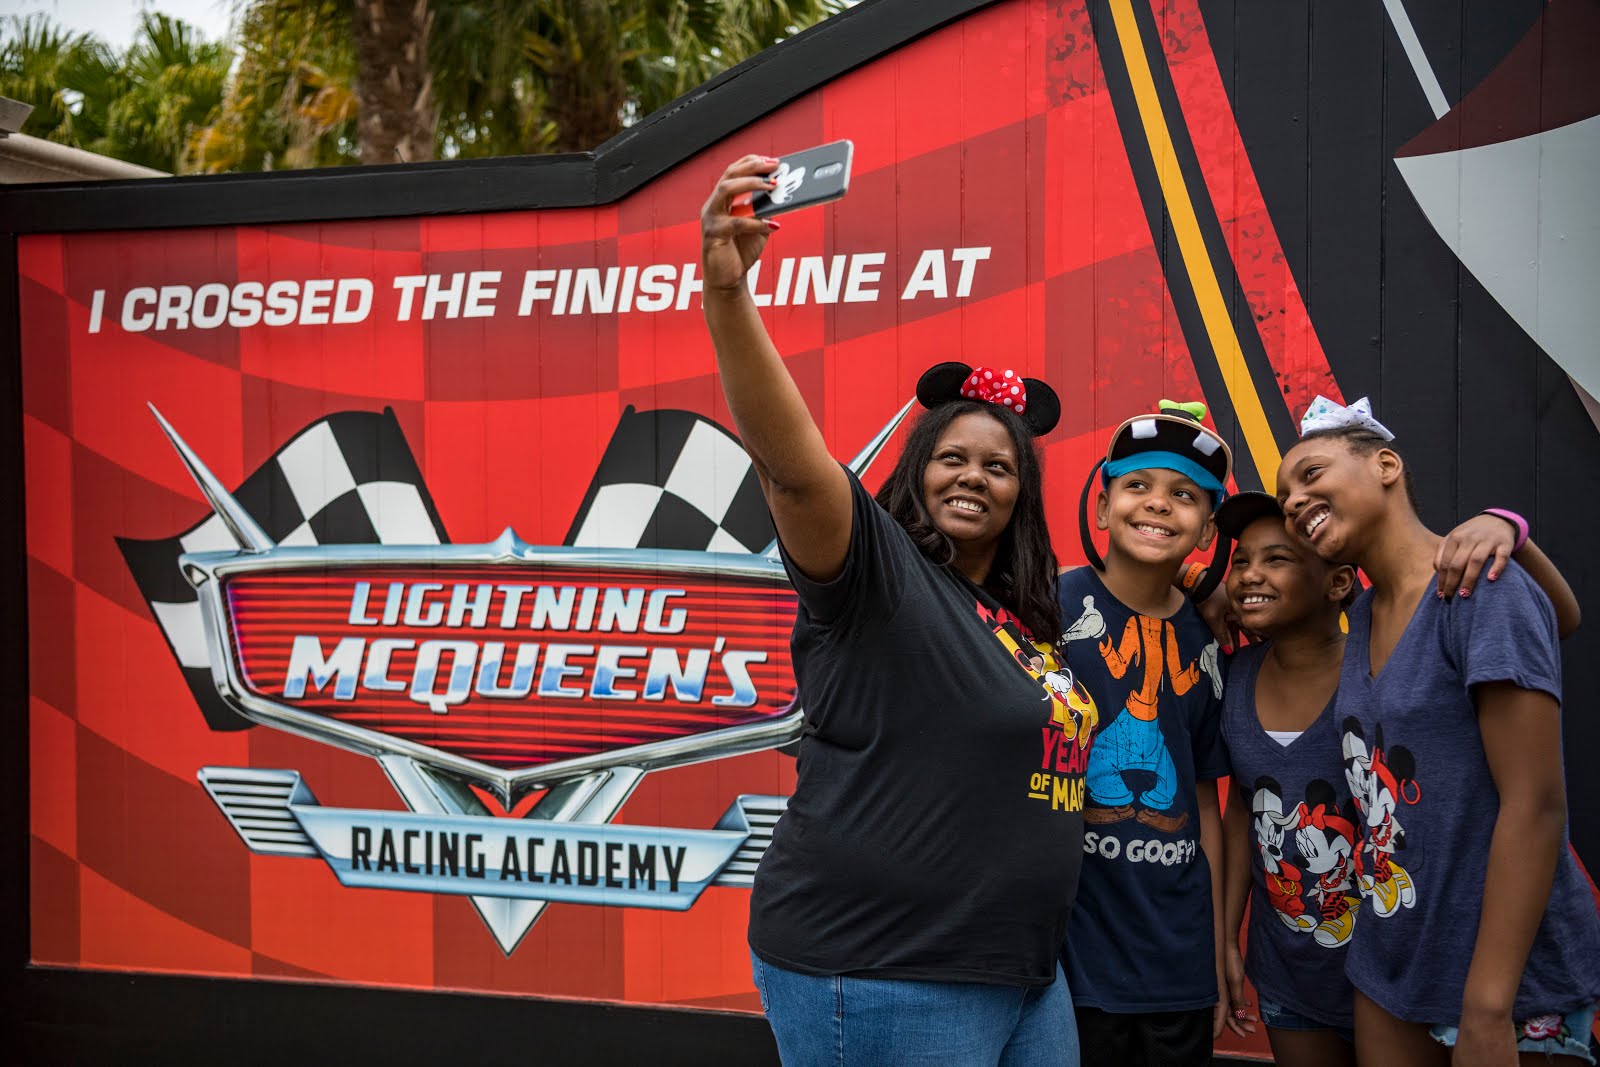 PHOTOS: Renderings Released for Lightning McQueen's Racing Academy